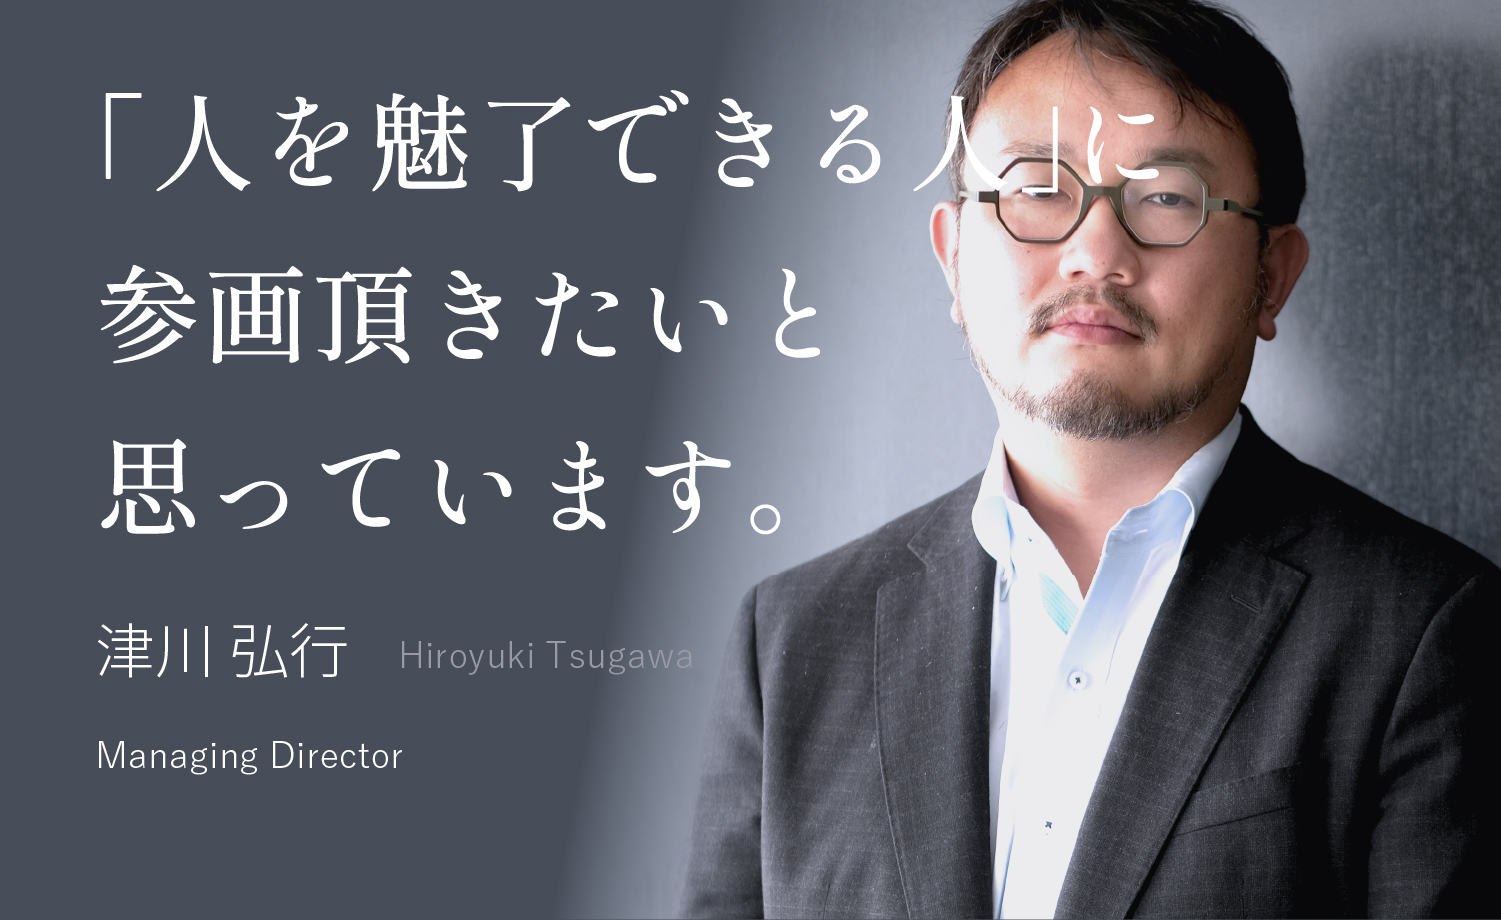 不確かな未来を、自分の頭と足で、切り拓こう 小川 達大 Tatsuhiro Ogawa Managing Director, Group Board Member, oriri President